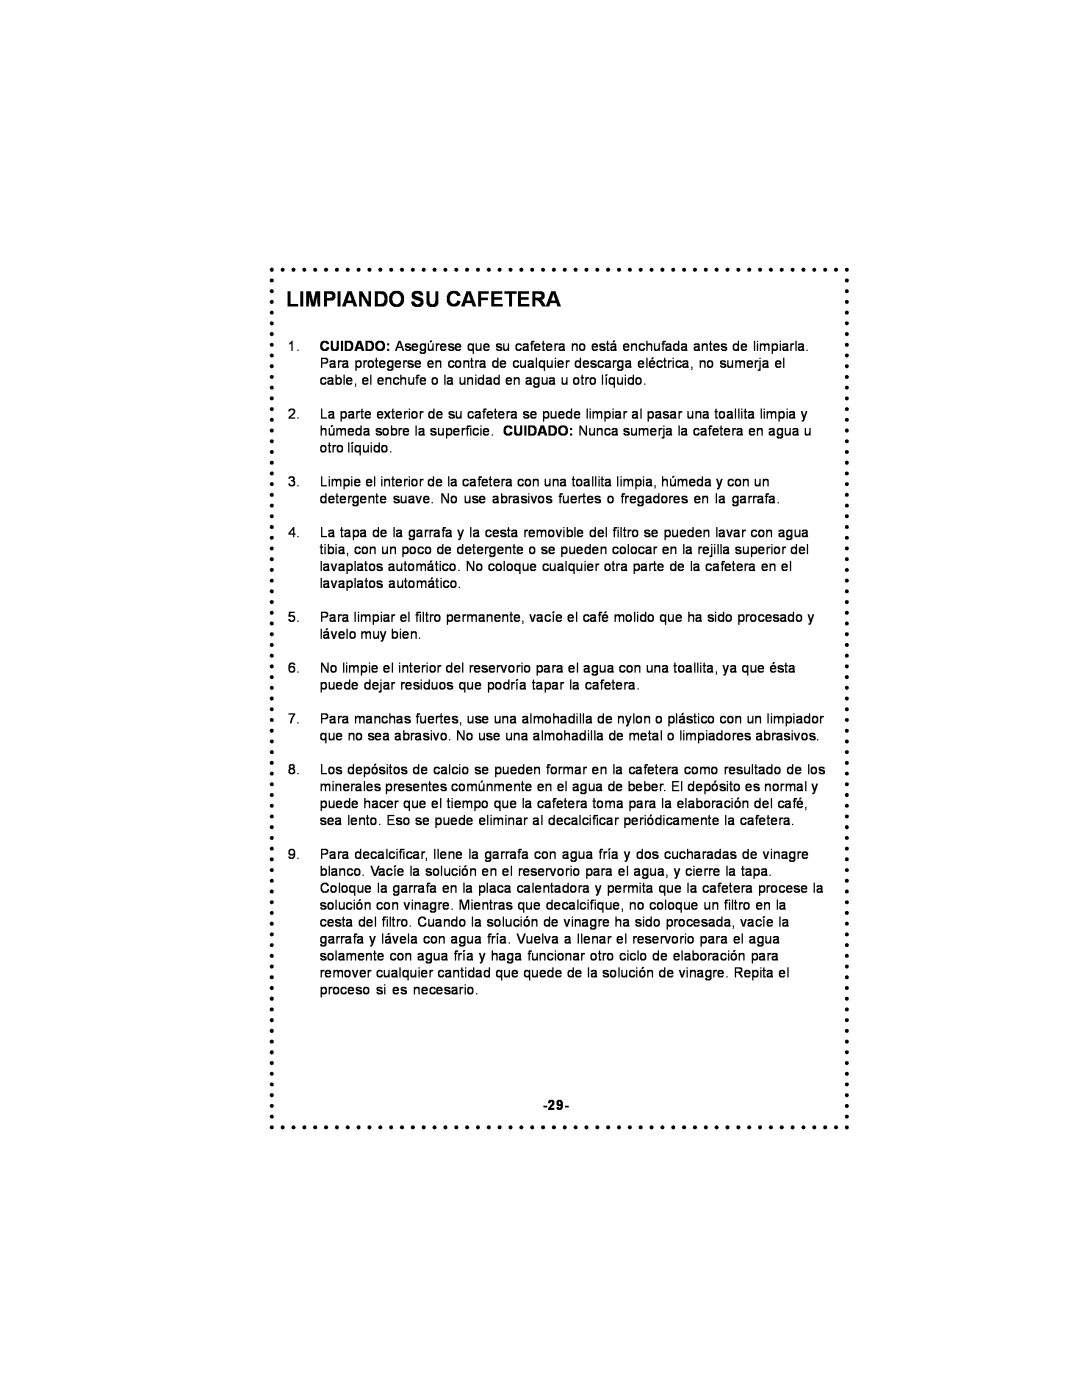 DeLonghi DC59TW instruction manual Limpiando Su Cafetera 